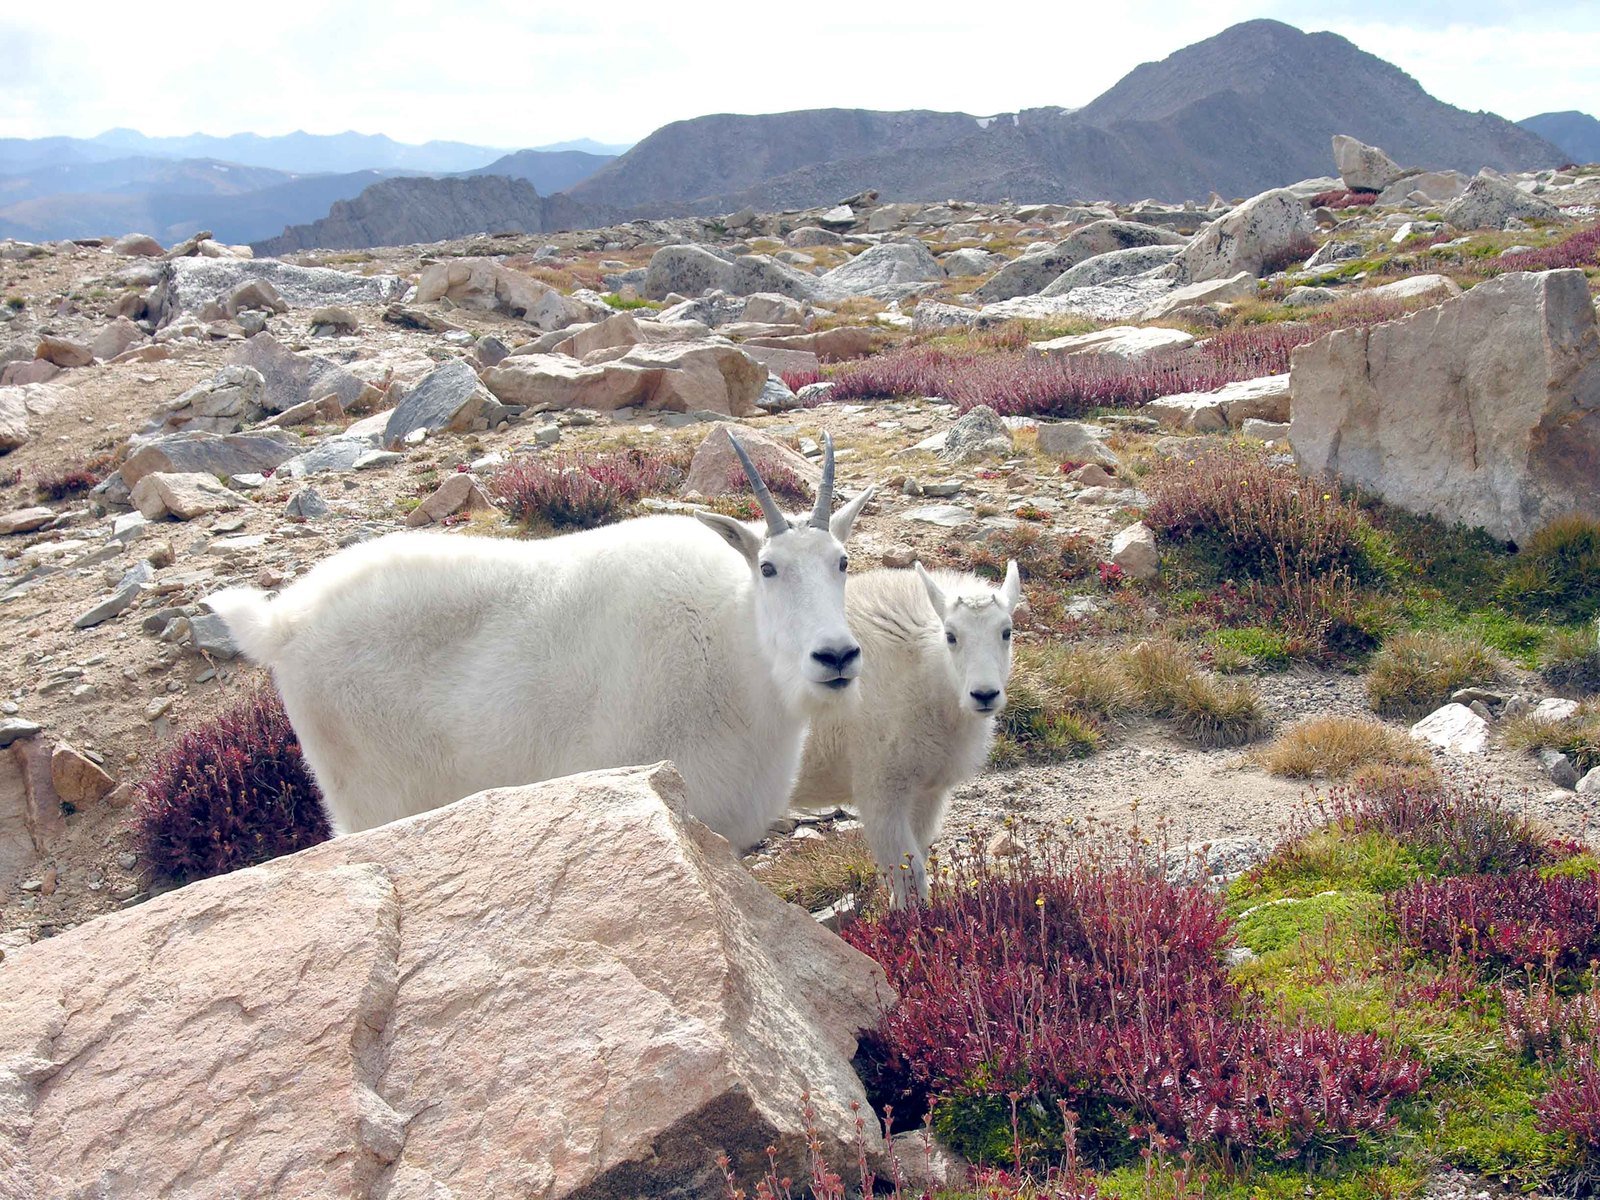 two mountain goats on rocky terrain next to some shrubs